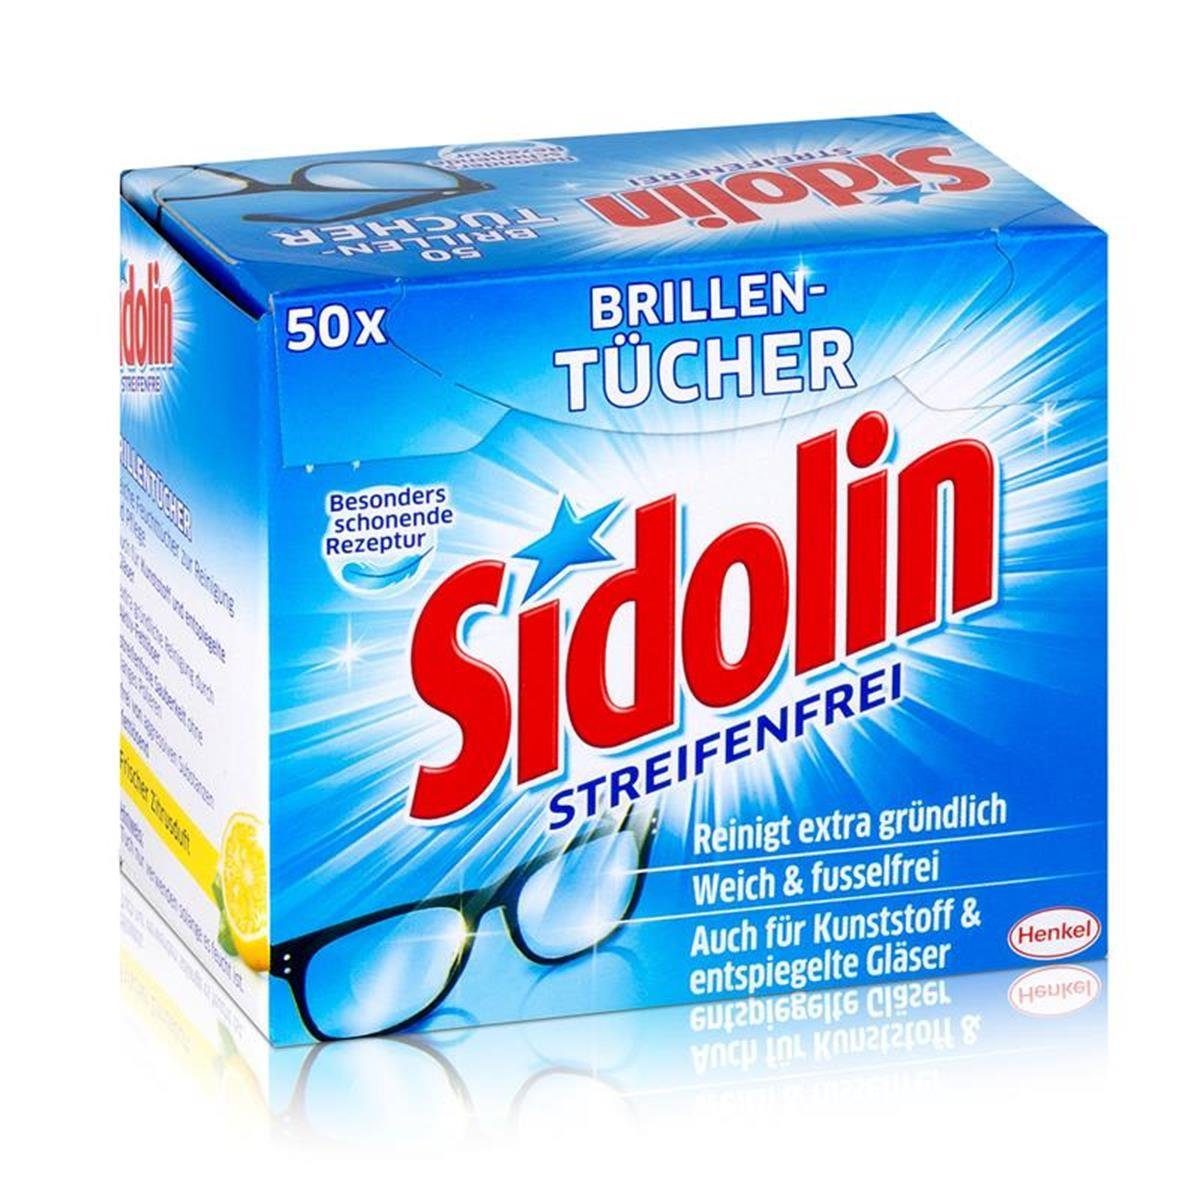 SIDOLIN Sidolin Brillen Putztücher 50 stk. Tücher Reinigungstücher